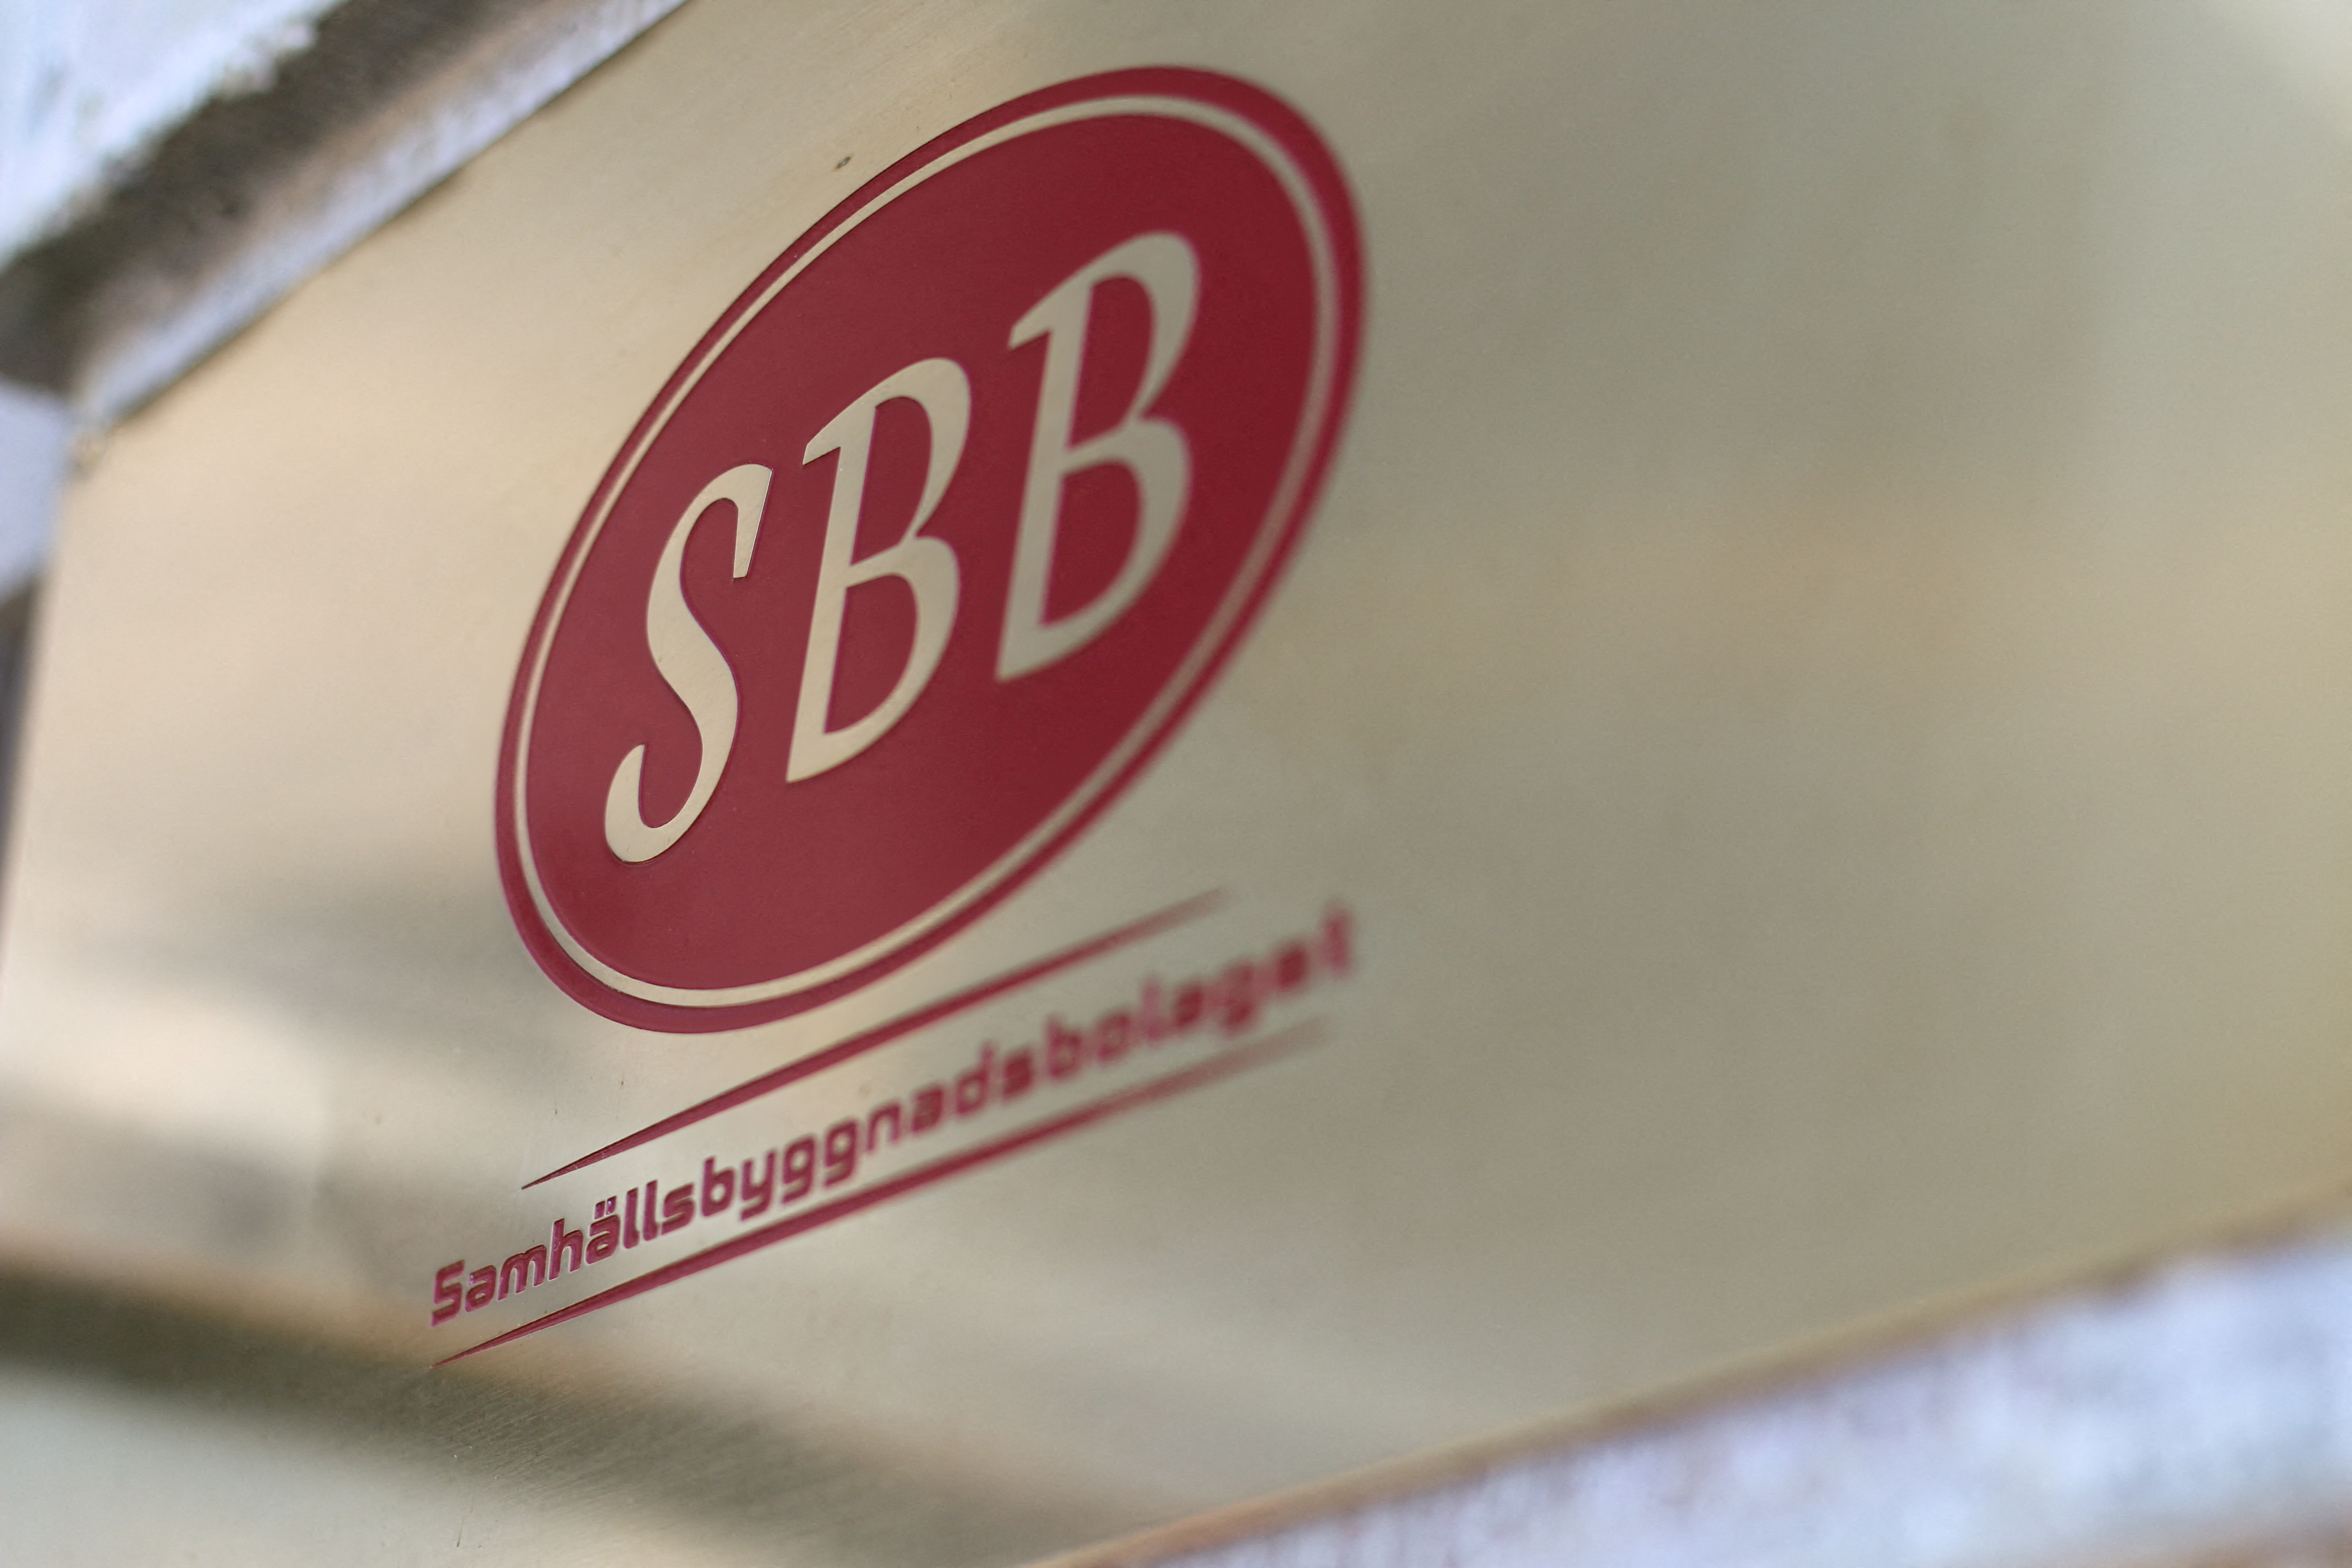 SBB in Stockholm